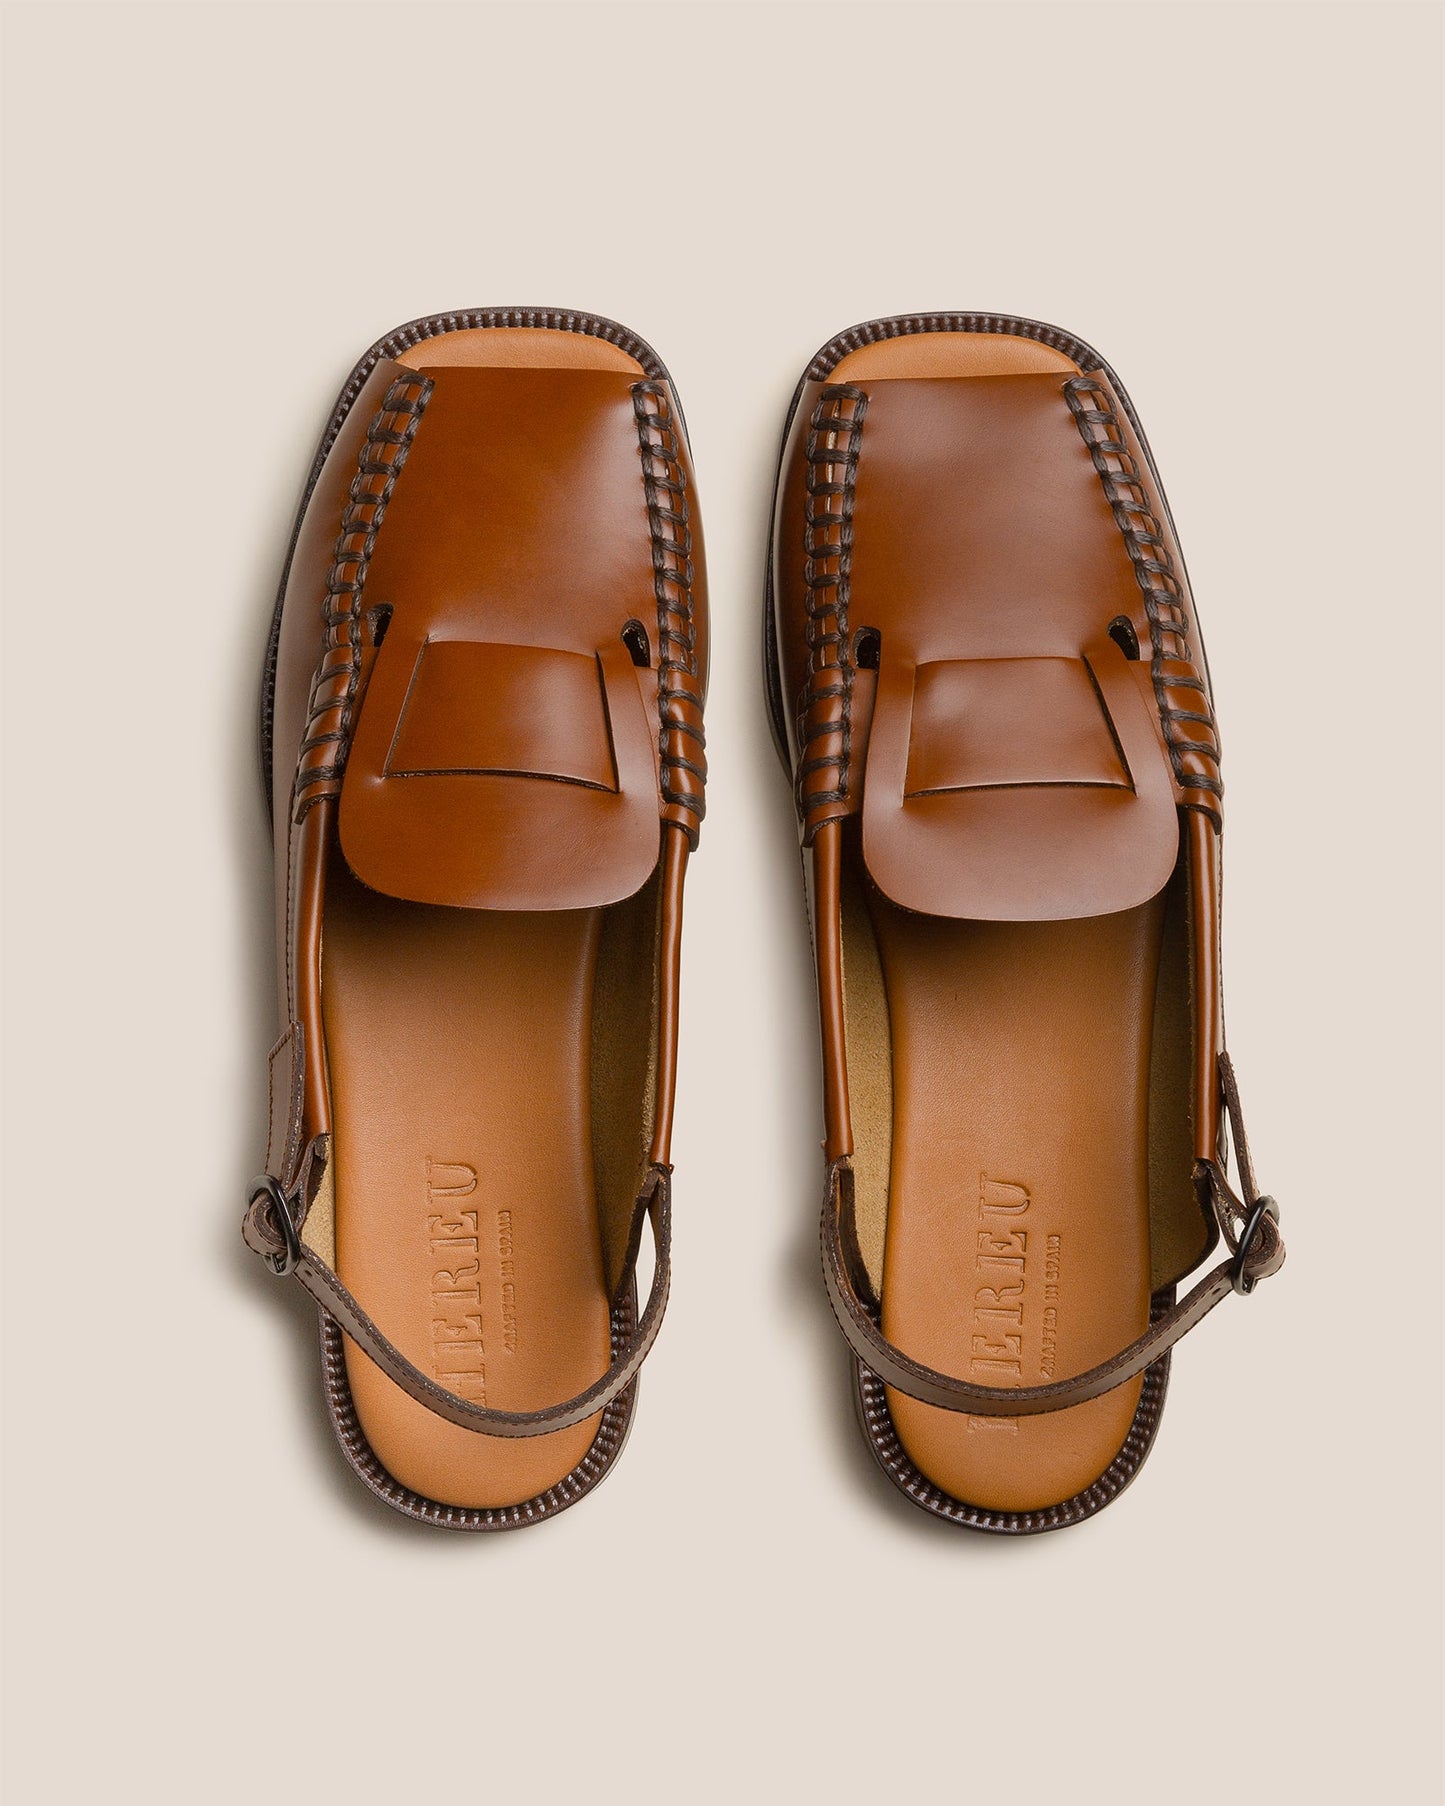 SINEU SANDAL - Men's Open-toe Slingback Loafer